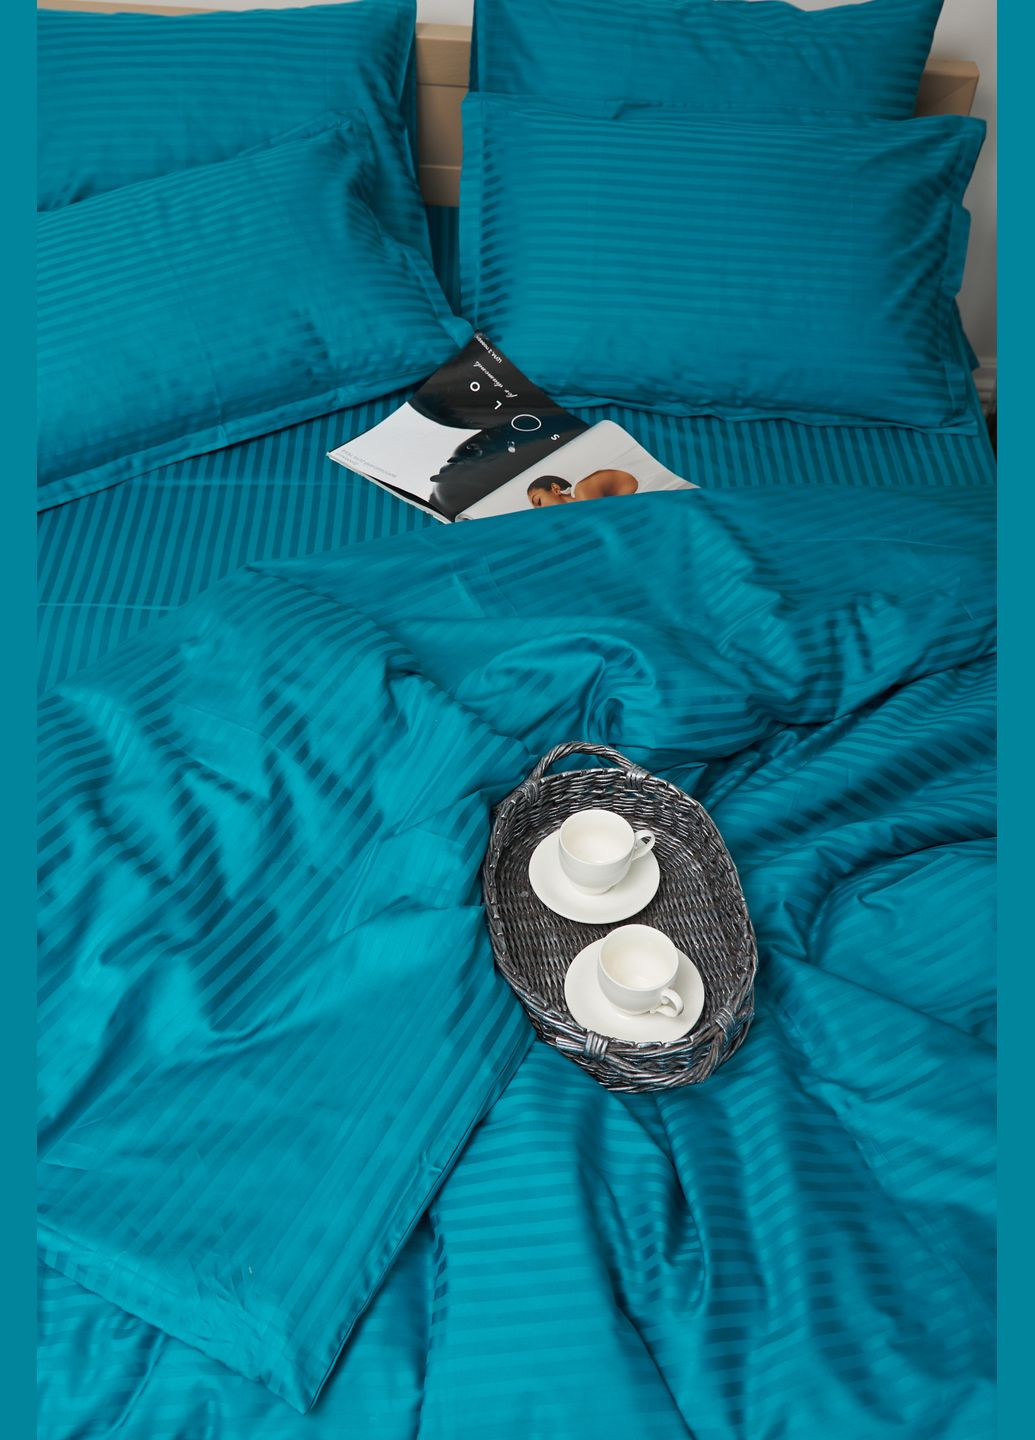 Комплект постельного белья полуторный евро 160х220 наволочки 2х70х70 Satin Stripe (MS-820000652) Moon&Star turkish blue (284416354)